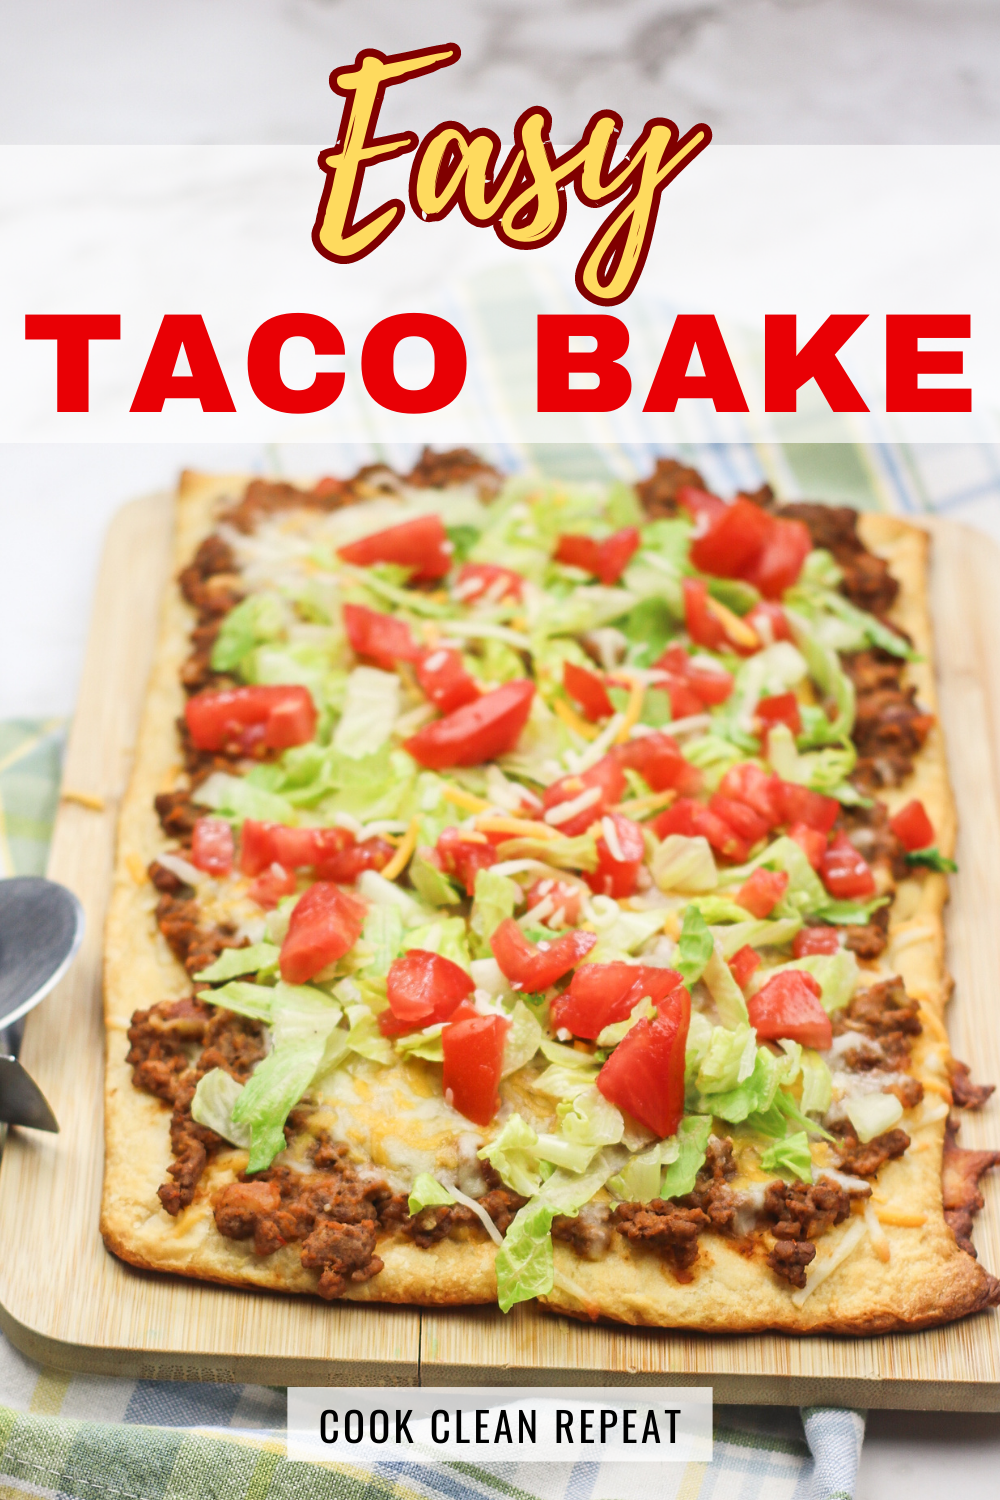 Easy taco bake recipe